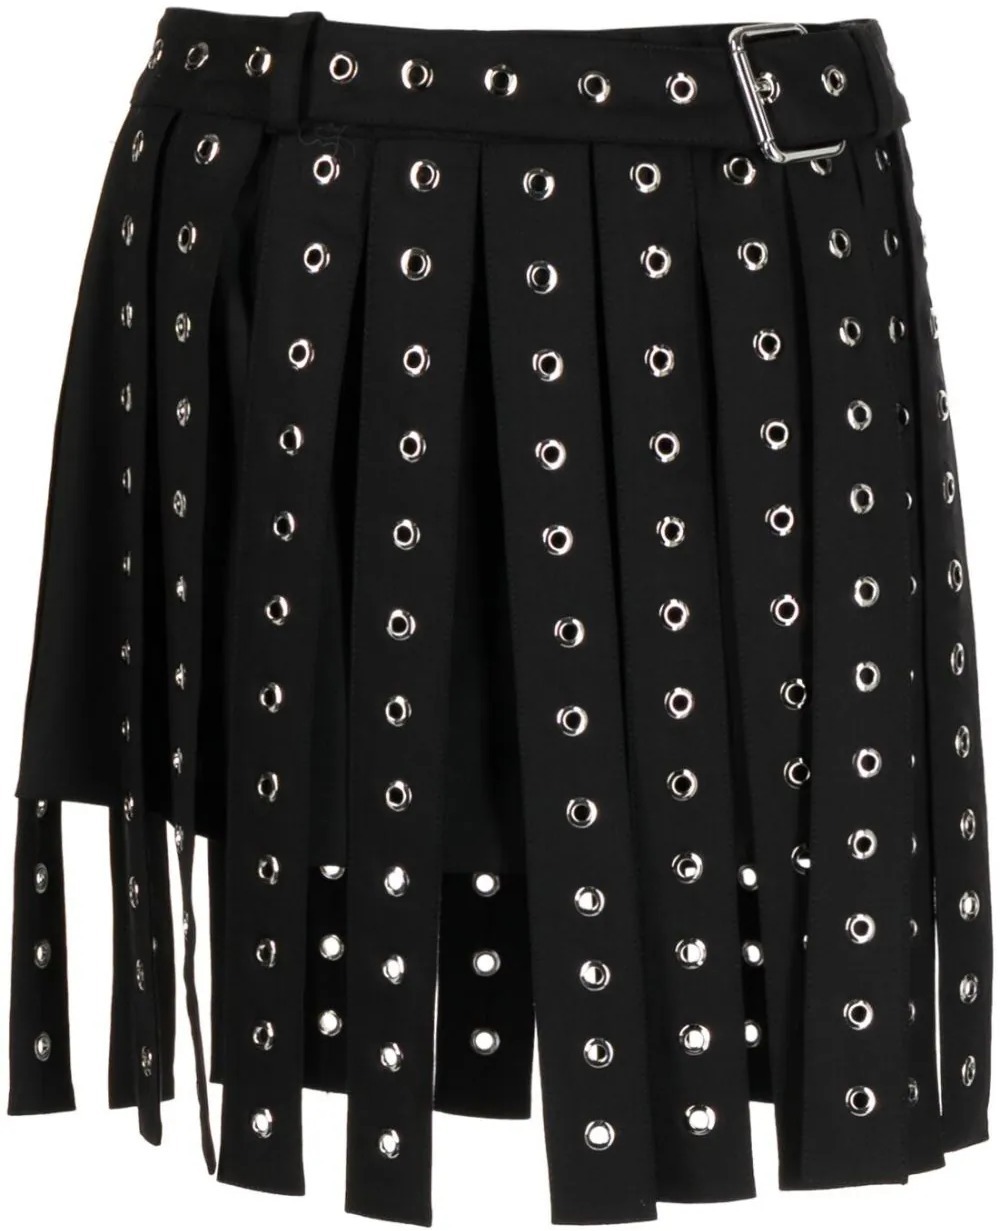 Skirt (Black Leather Fringe) | style